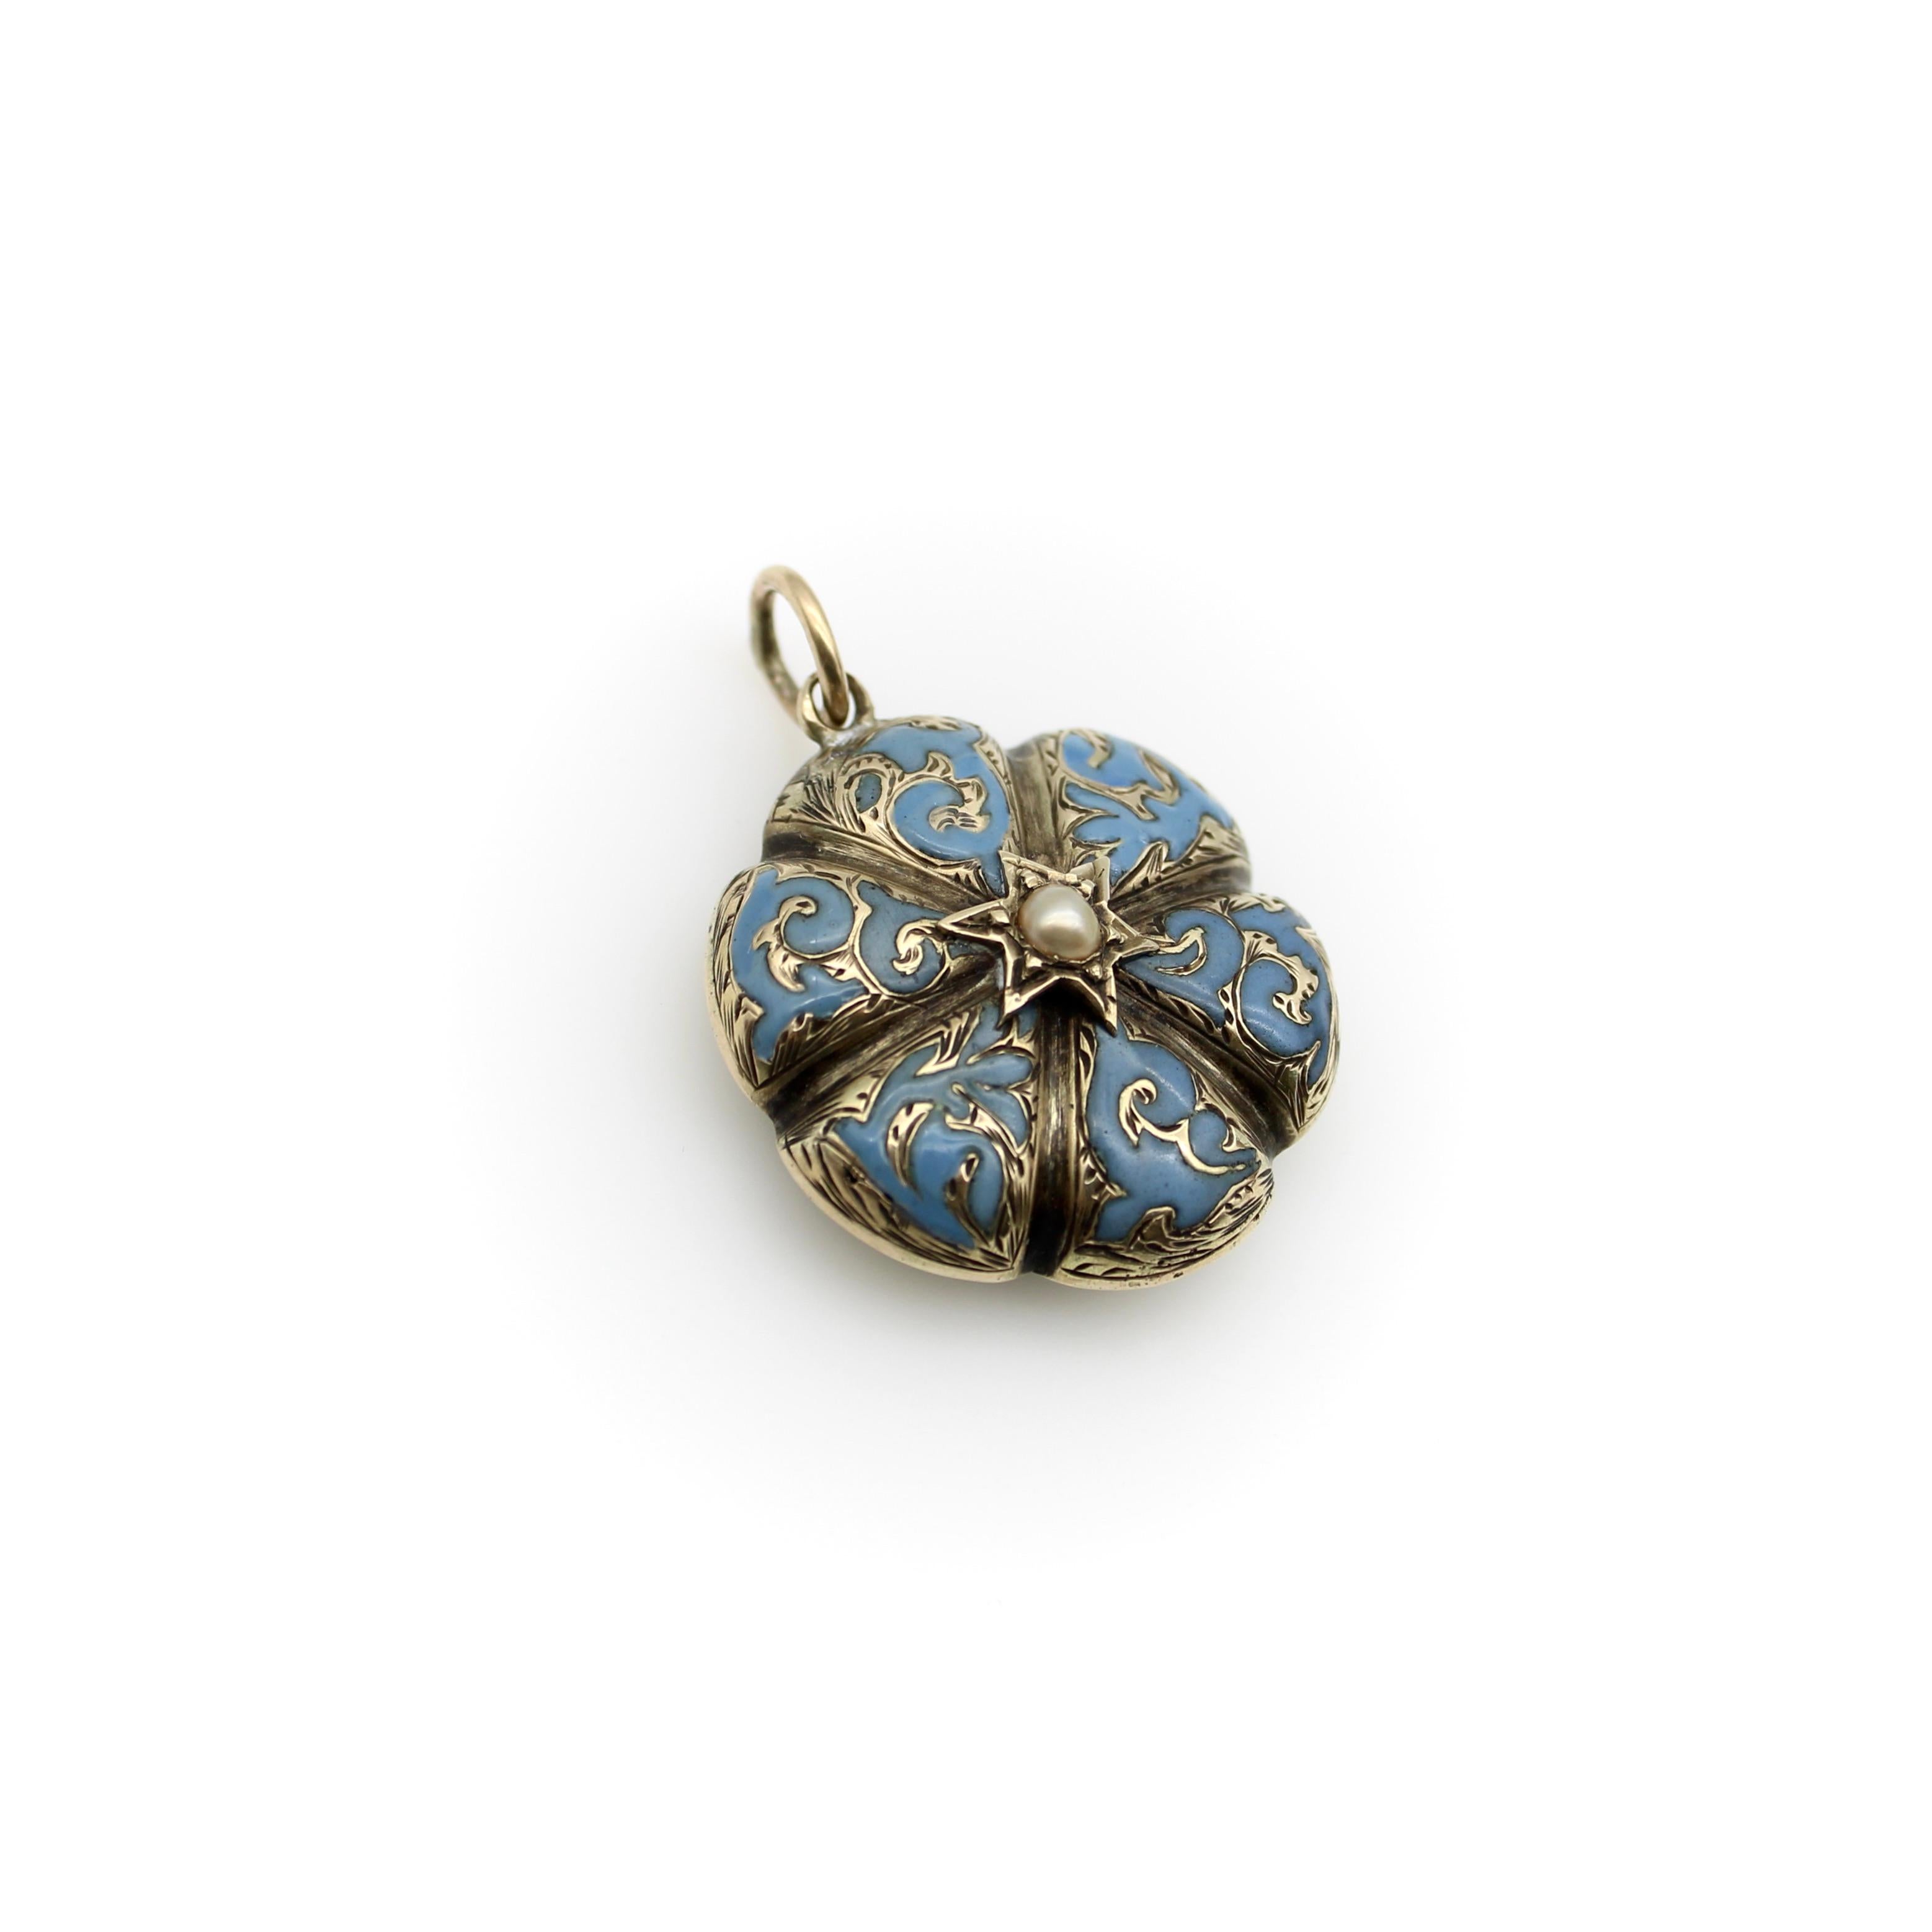 Circa 1850, ce médaillon victorien en or 14k aurait été porté en souvenir d'un être cher. La fleur de myosotis était un symbole significatif dans les bijoux de l'époque victorienne. Elle a cinq pétales, bien qu'elle ait souvent été représentée comme